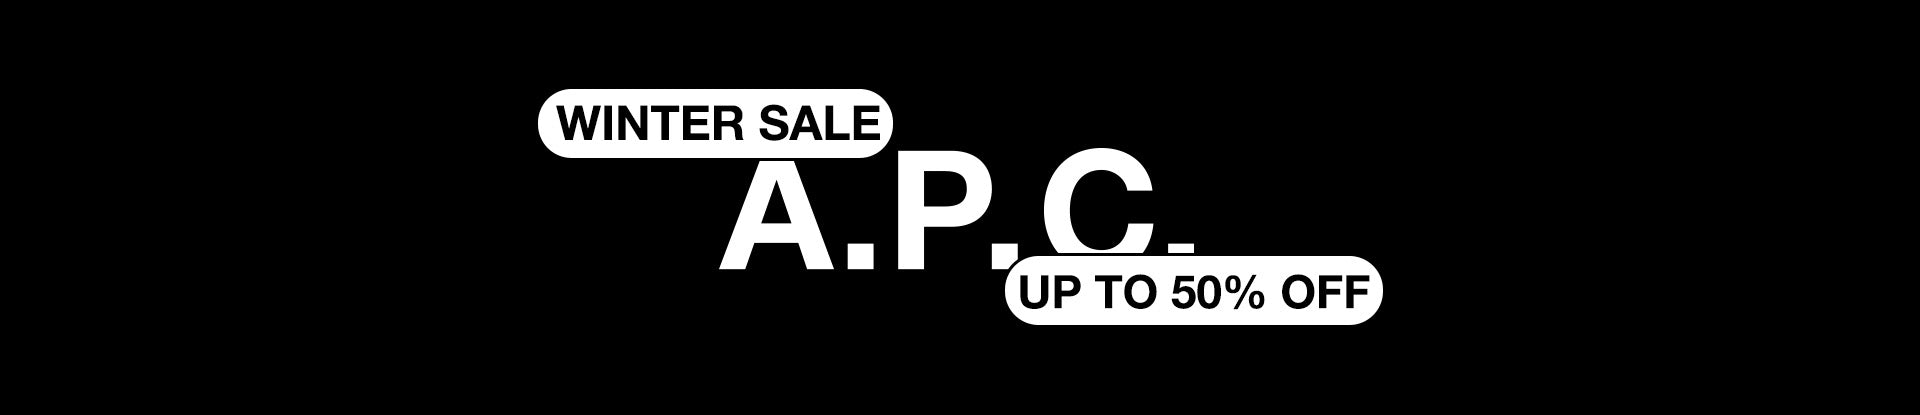 Sale - Men\'s T-shirts, - Up off 2 | to A.P.C. Page 50% Polos –